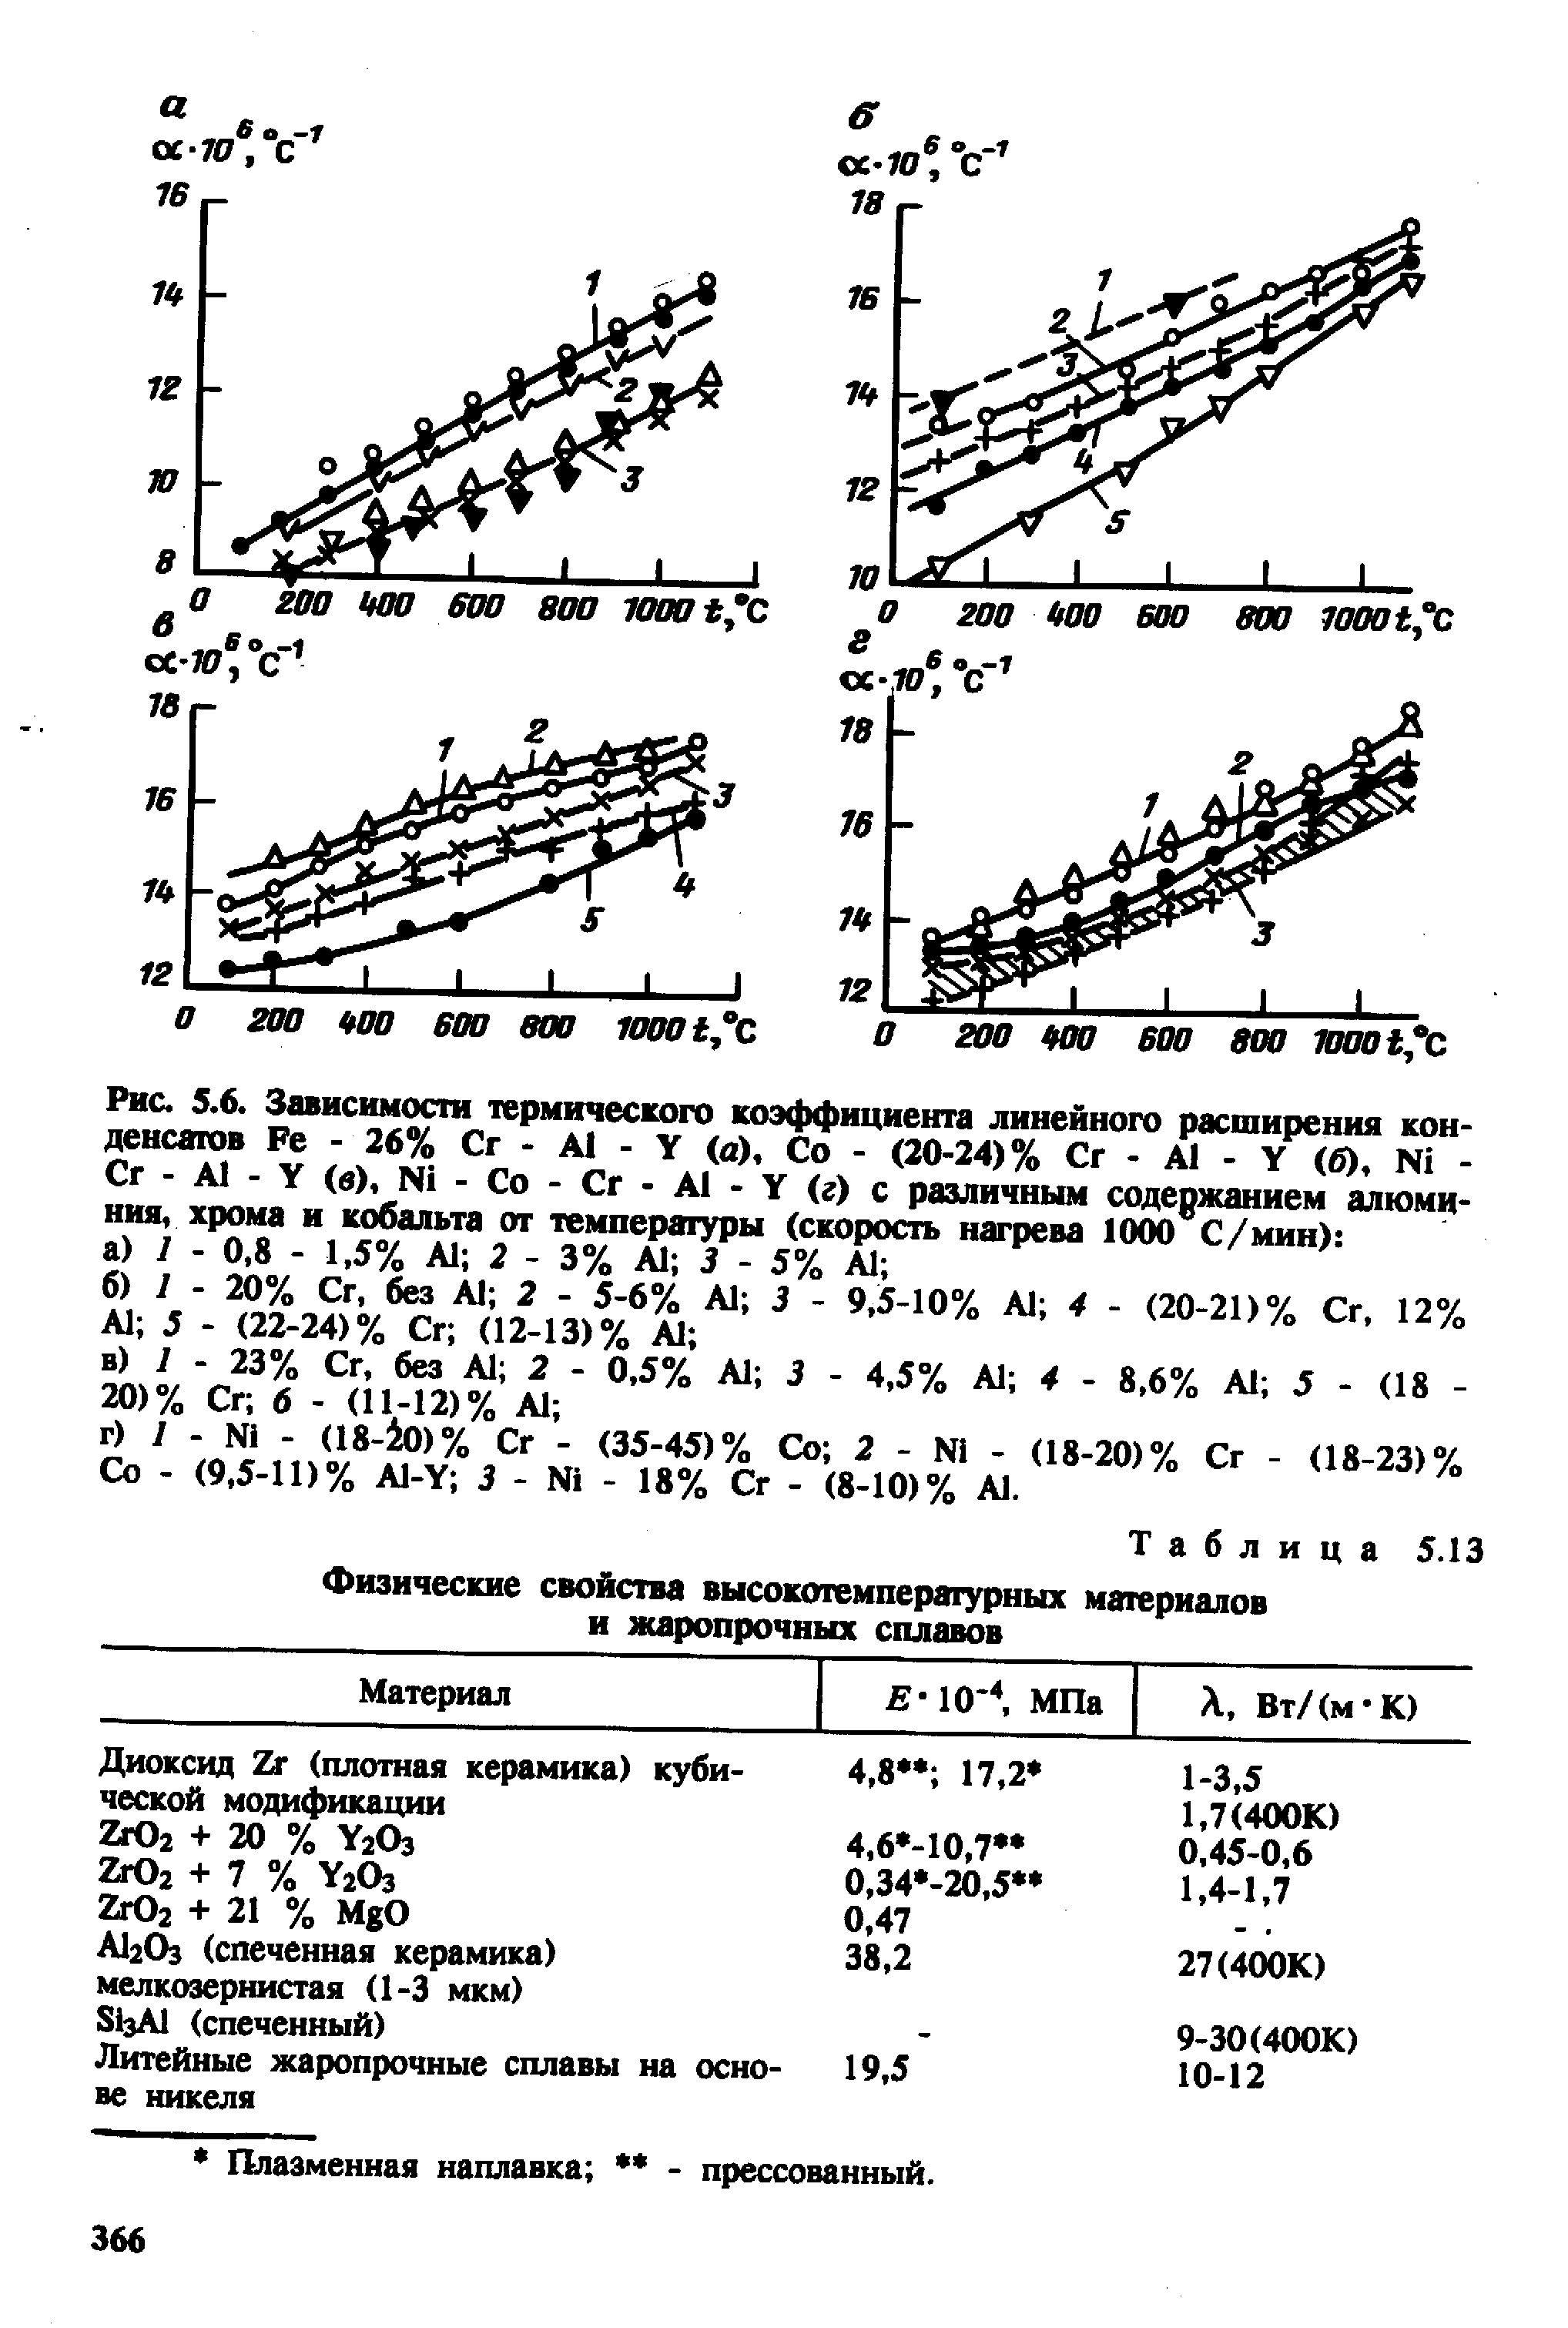 Рис. 5.6. Зависимости <a href="/info/33888">термического коэффициента линейного расширения</a> конденсатов Ре - 26% Сг - А1 - V (й). Со - (20-24)% Сг - А1 - V (б), № -Сг - А - (в), N1 - Со - Сг - А1 V (г) с раэличньш содержанием алюминия, хрома и кобальта от темперагуры (скорость нагрева 1000 С/мин) 
